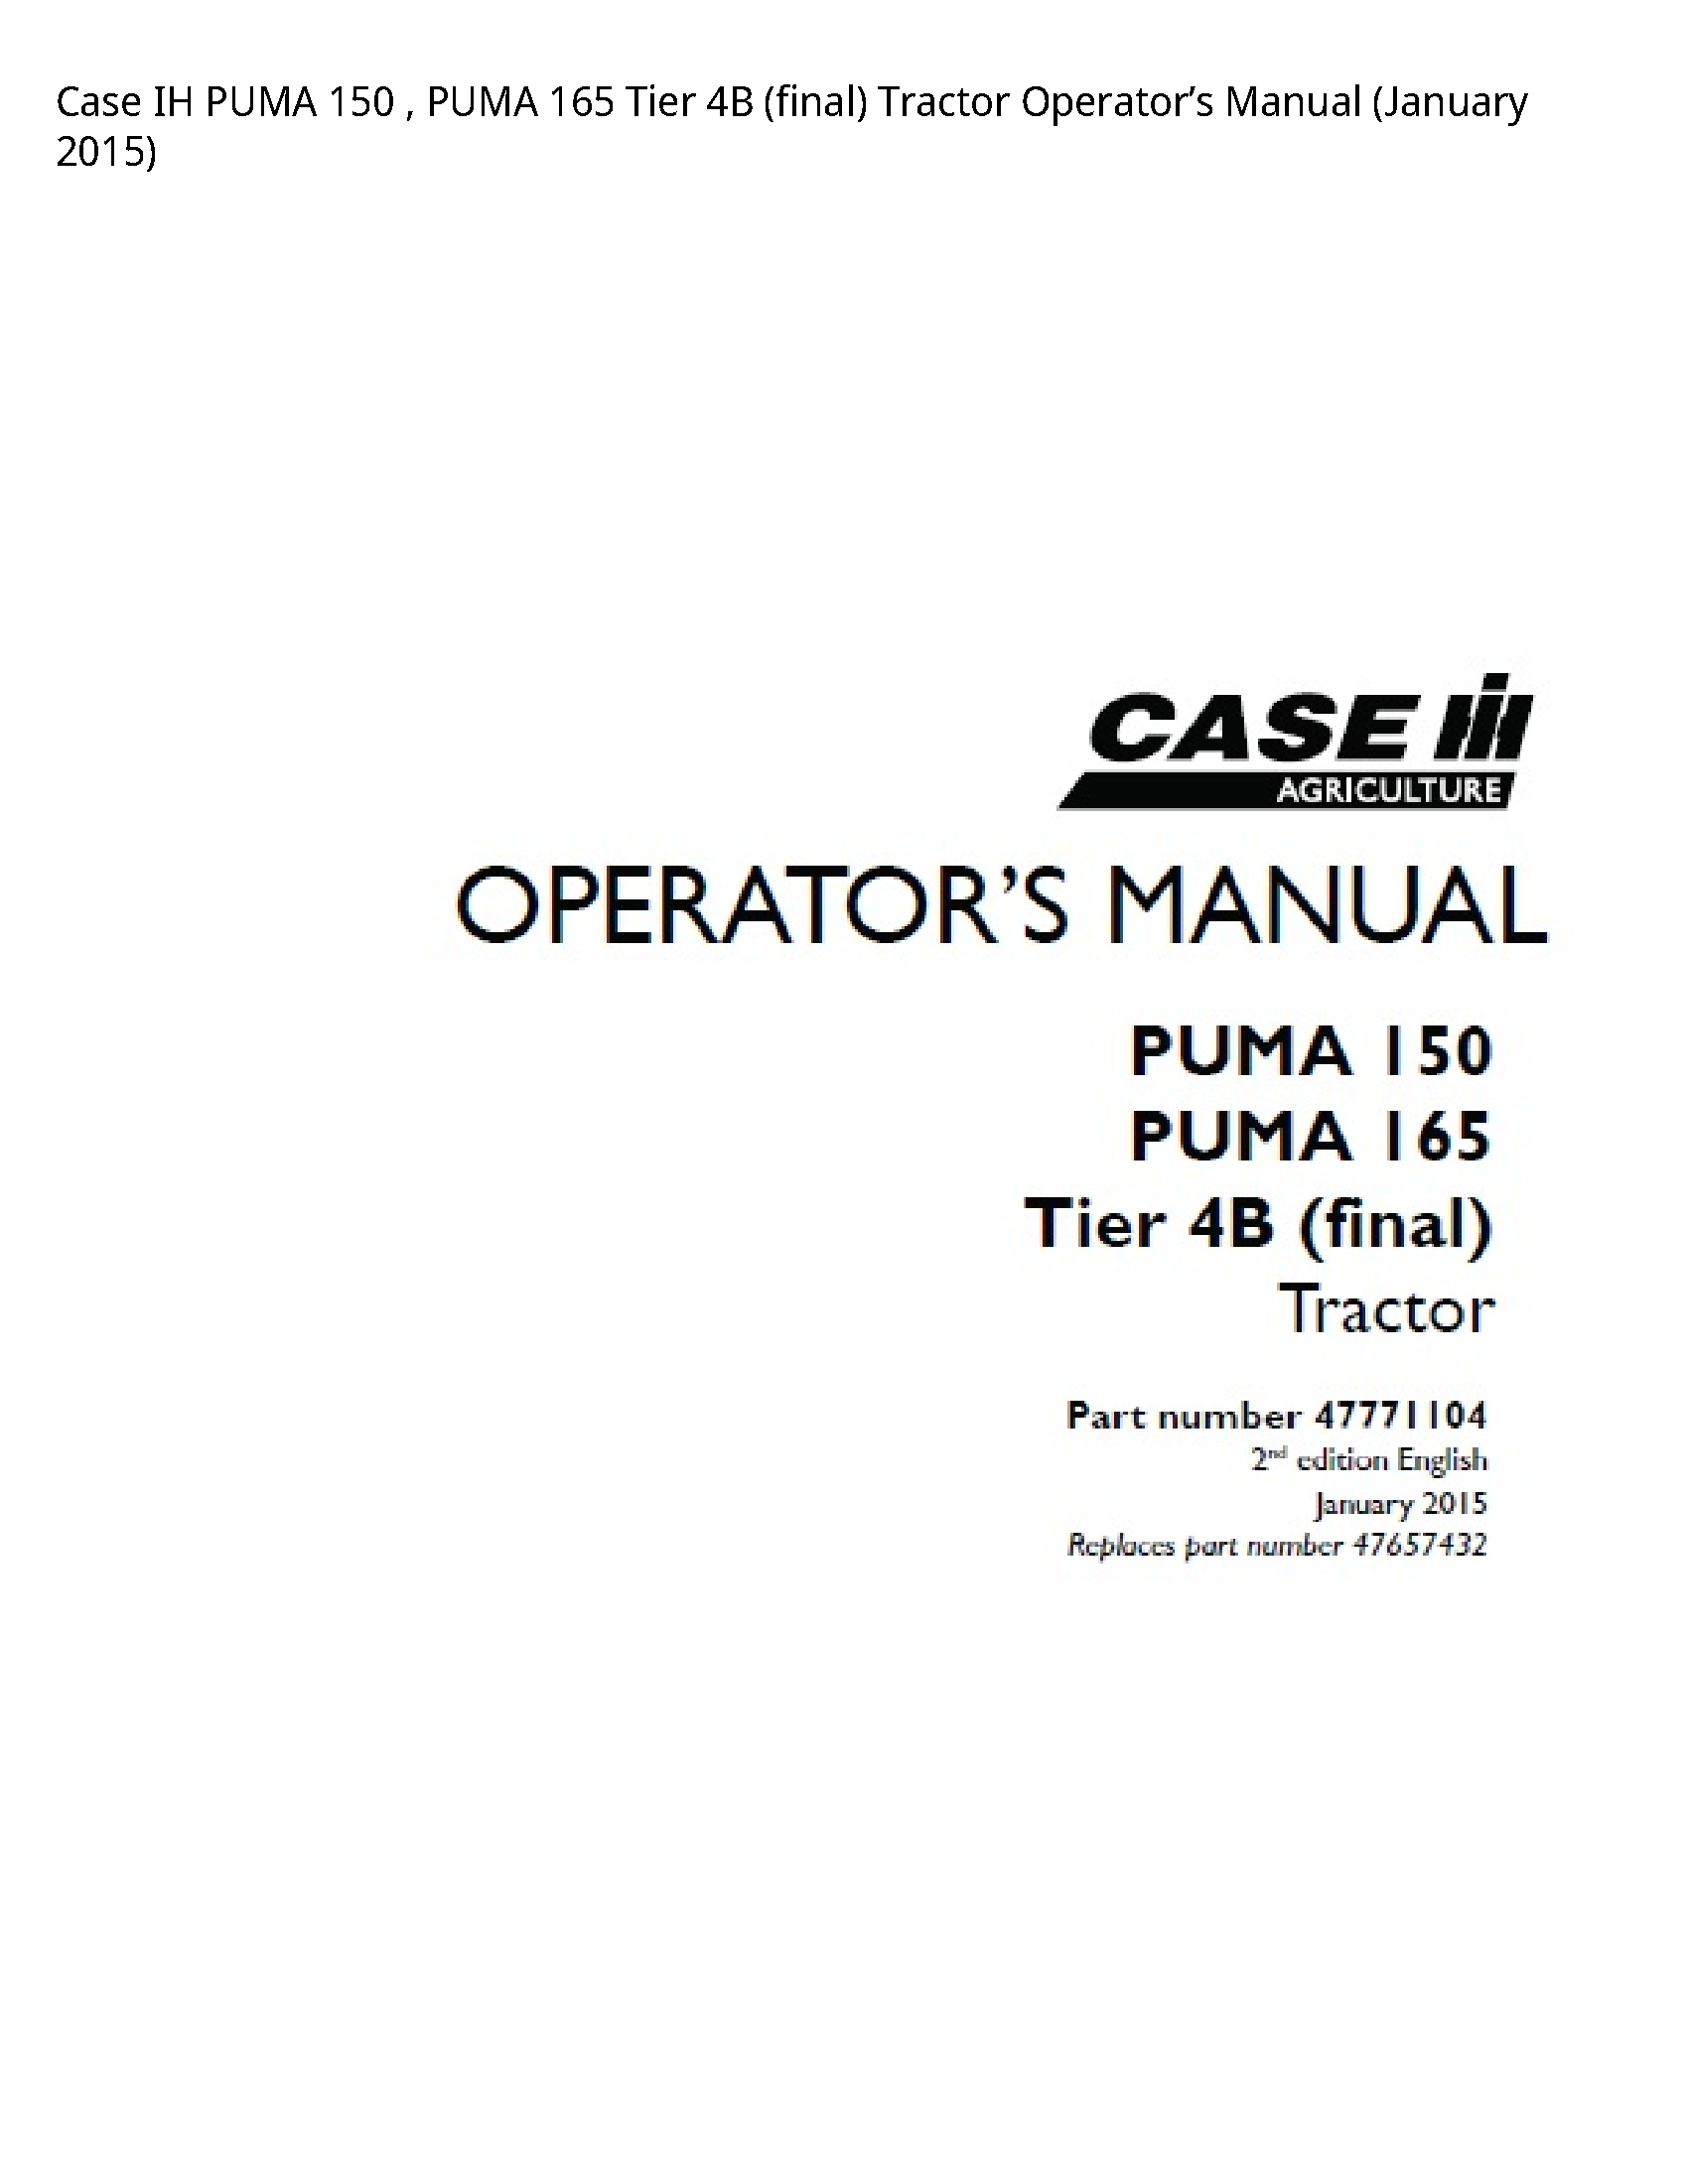 Case/Case IH 150 IH PUMA PUMA Tier (final) Tractor Operator’s manual